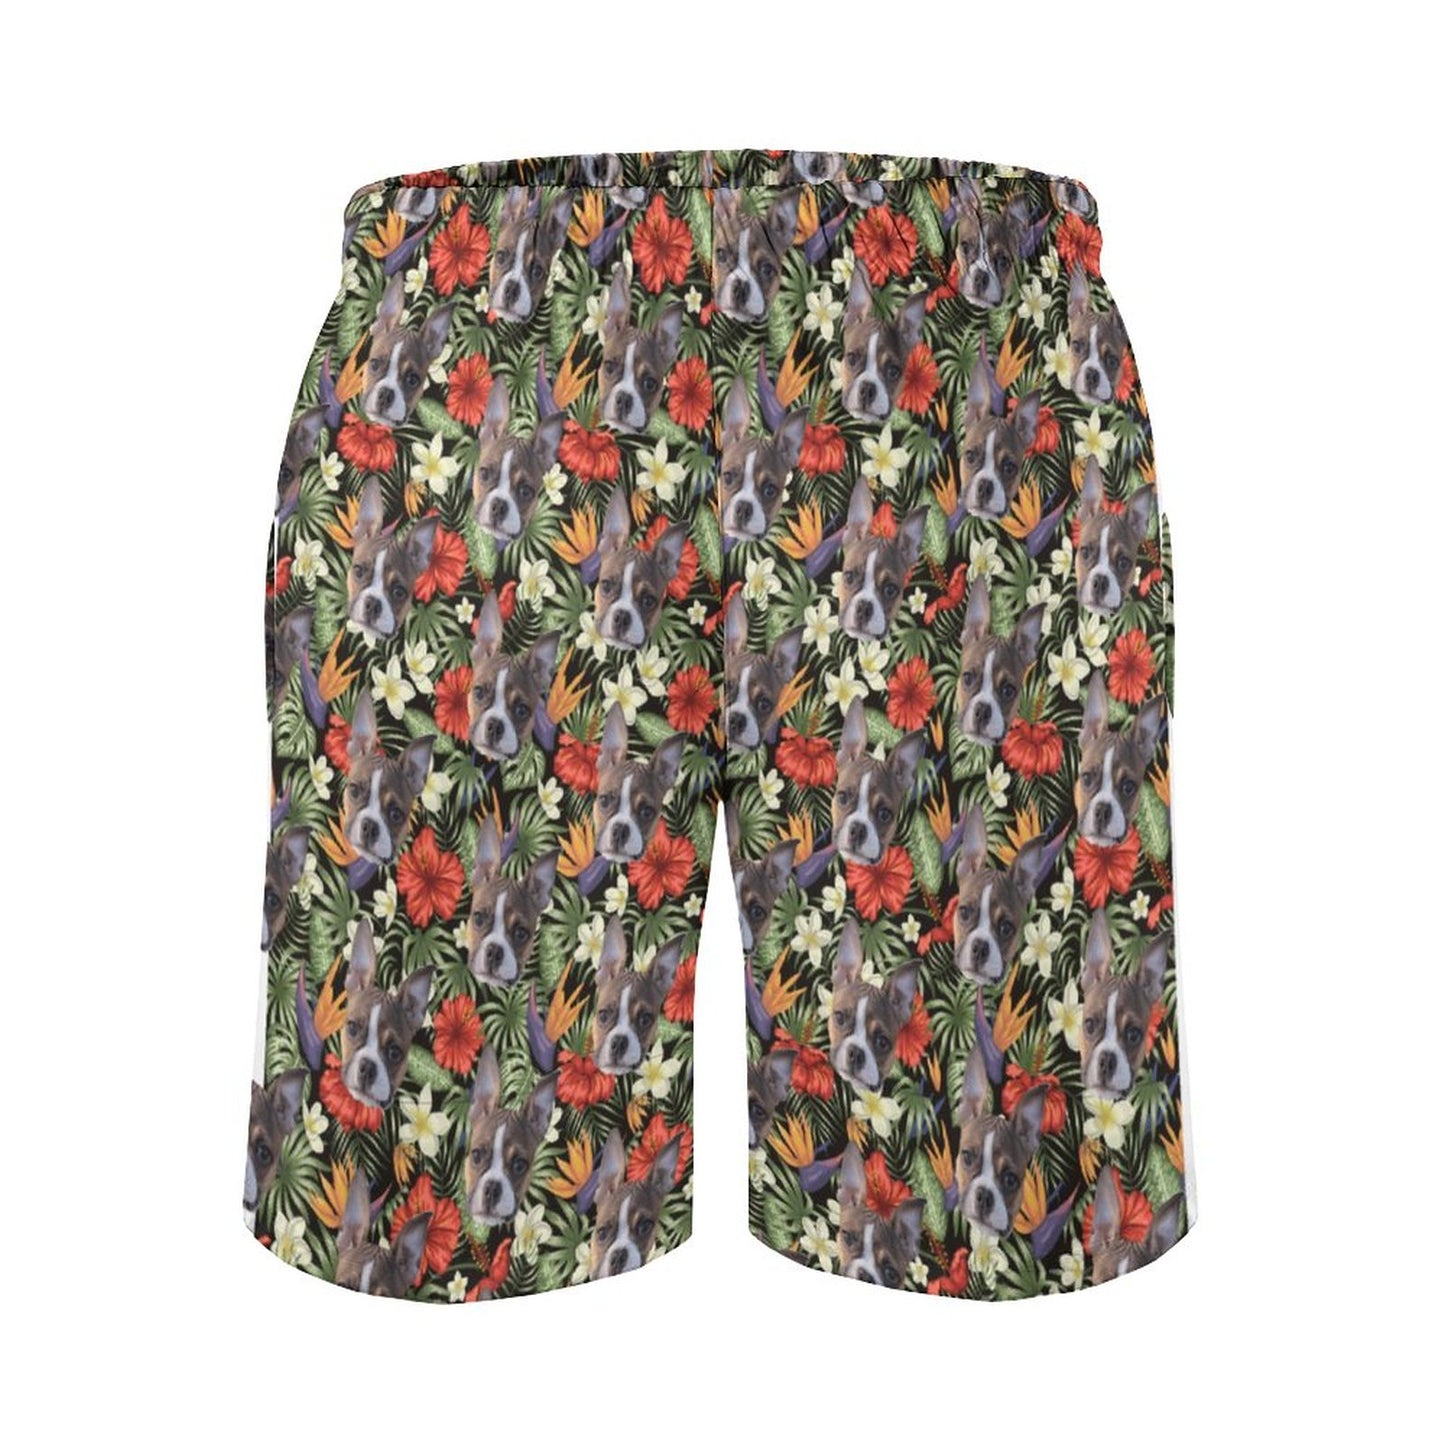 HAWAIIAN STYLE FACE - Men's Beach Shorts with Pockets